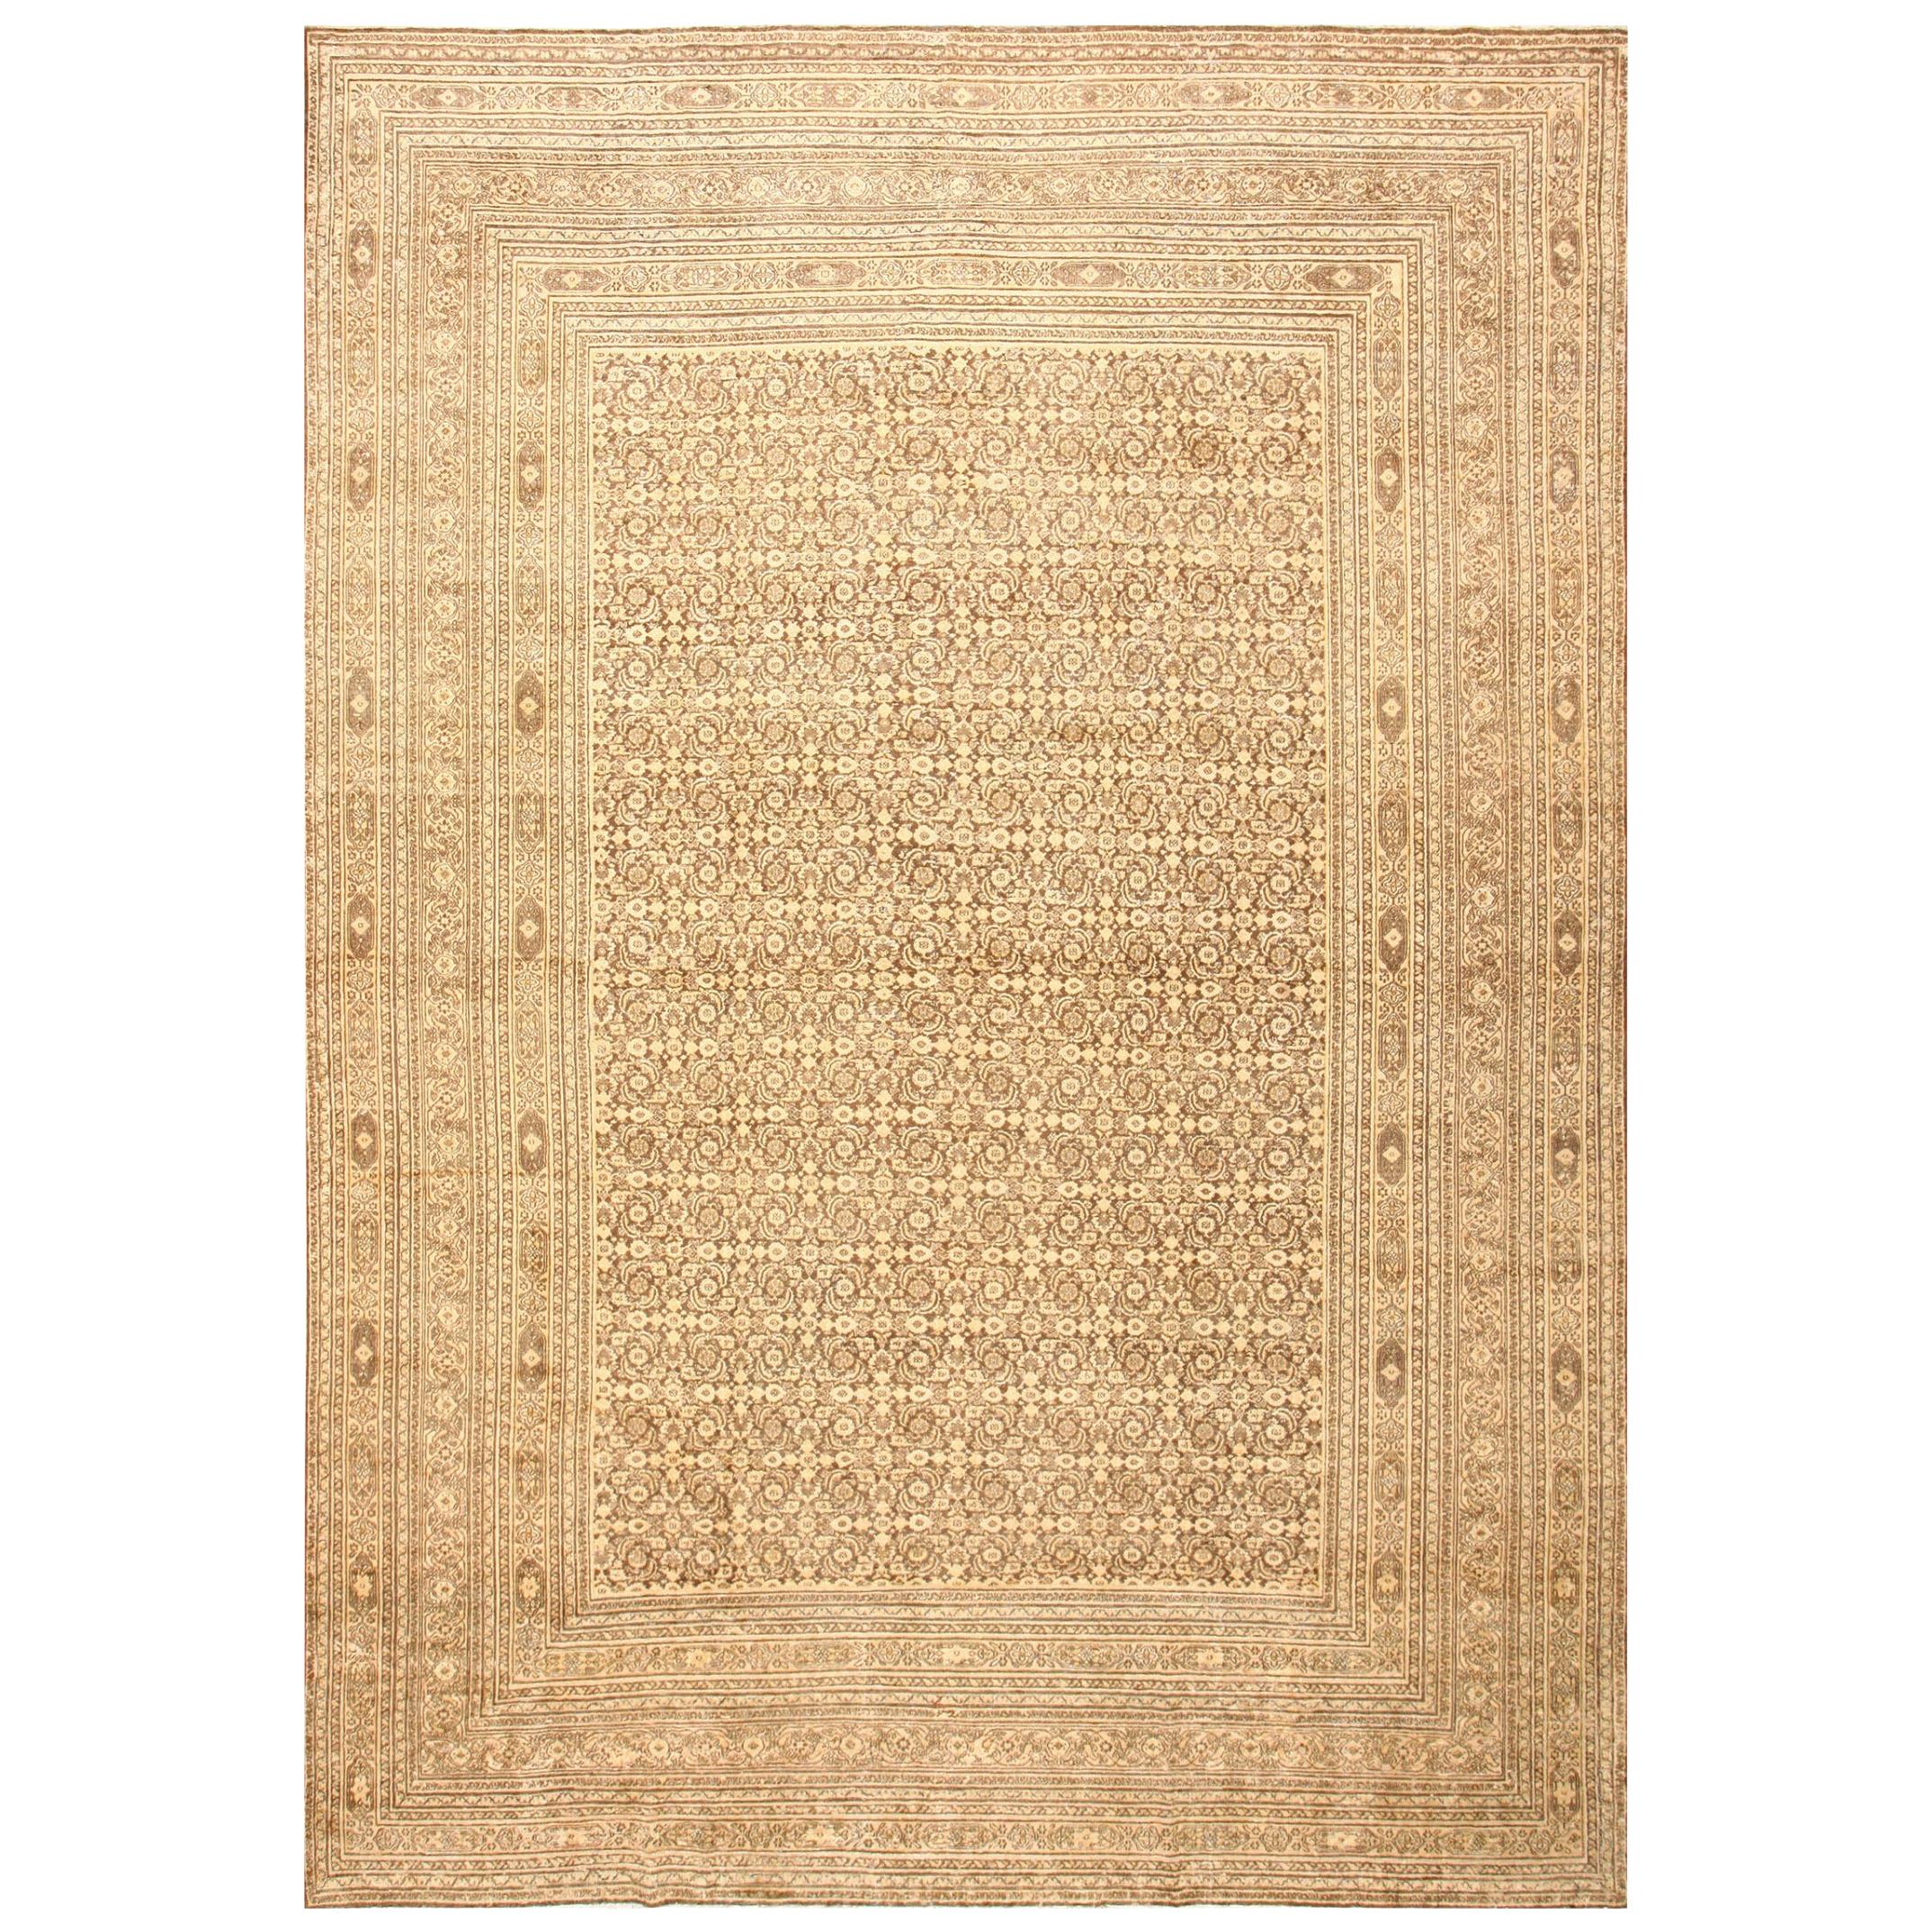 Antiker persischer Khorassan-Teppich. Größe: 11 Fuß 3 Zoll x 16 Fuß 3 Zoll